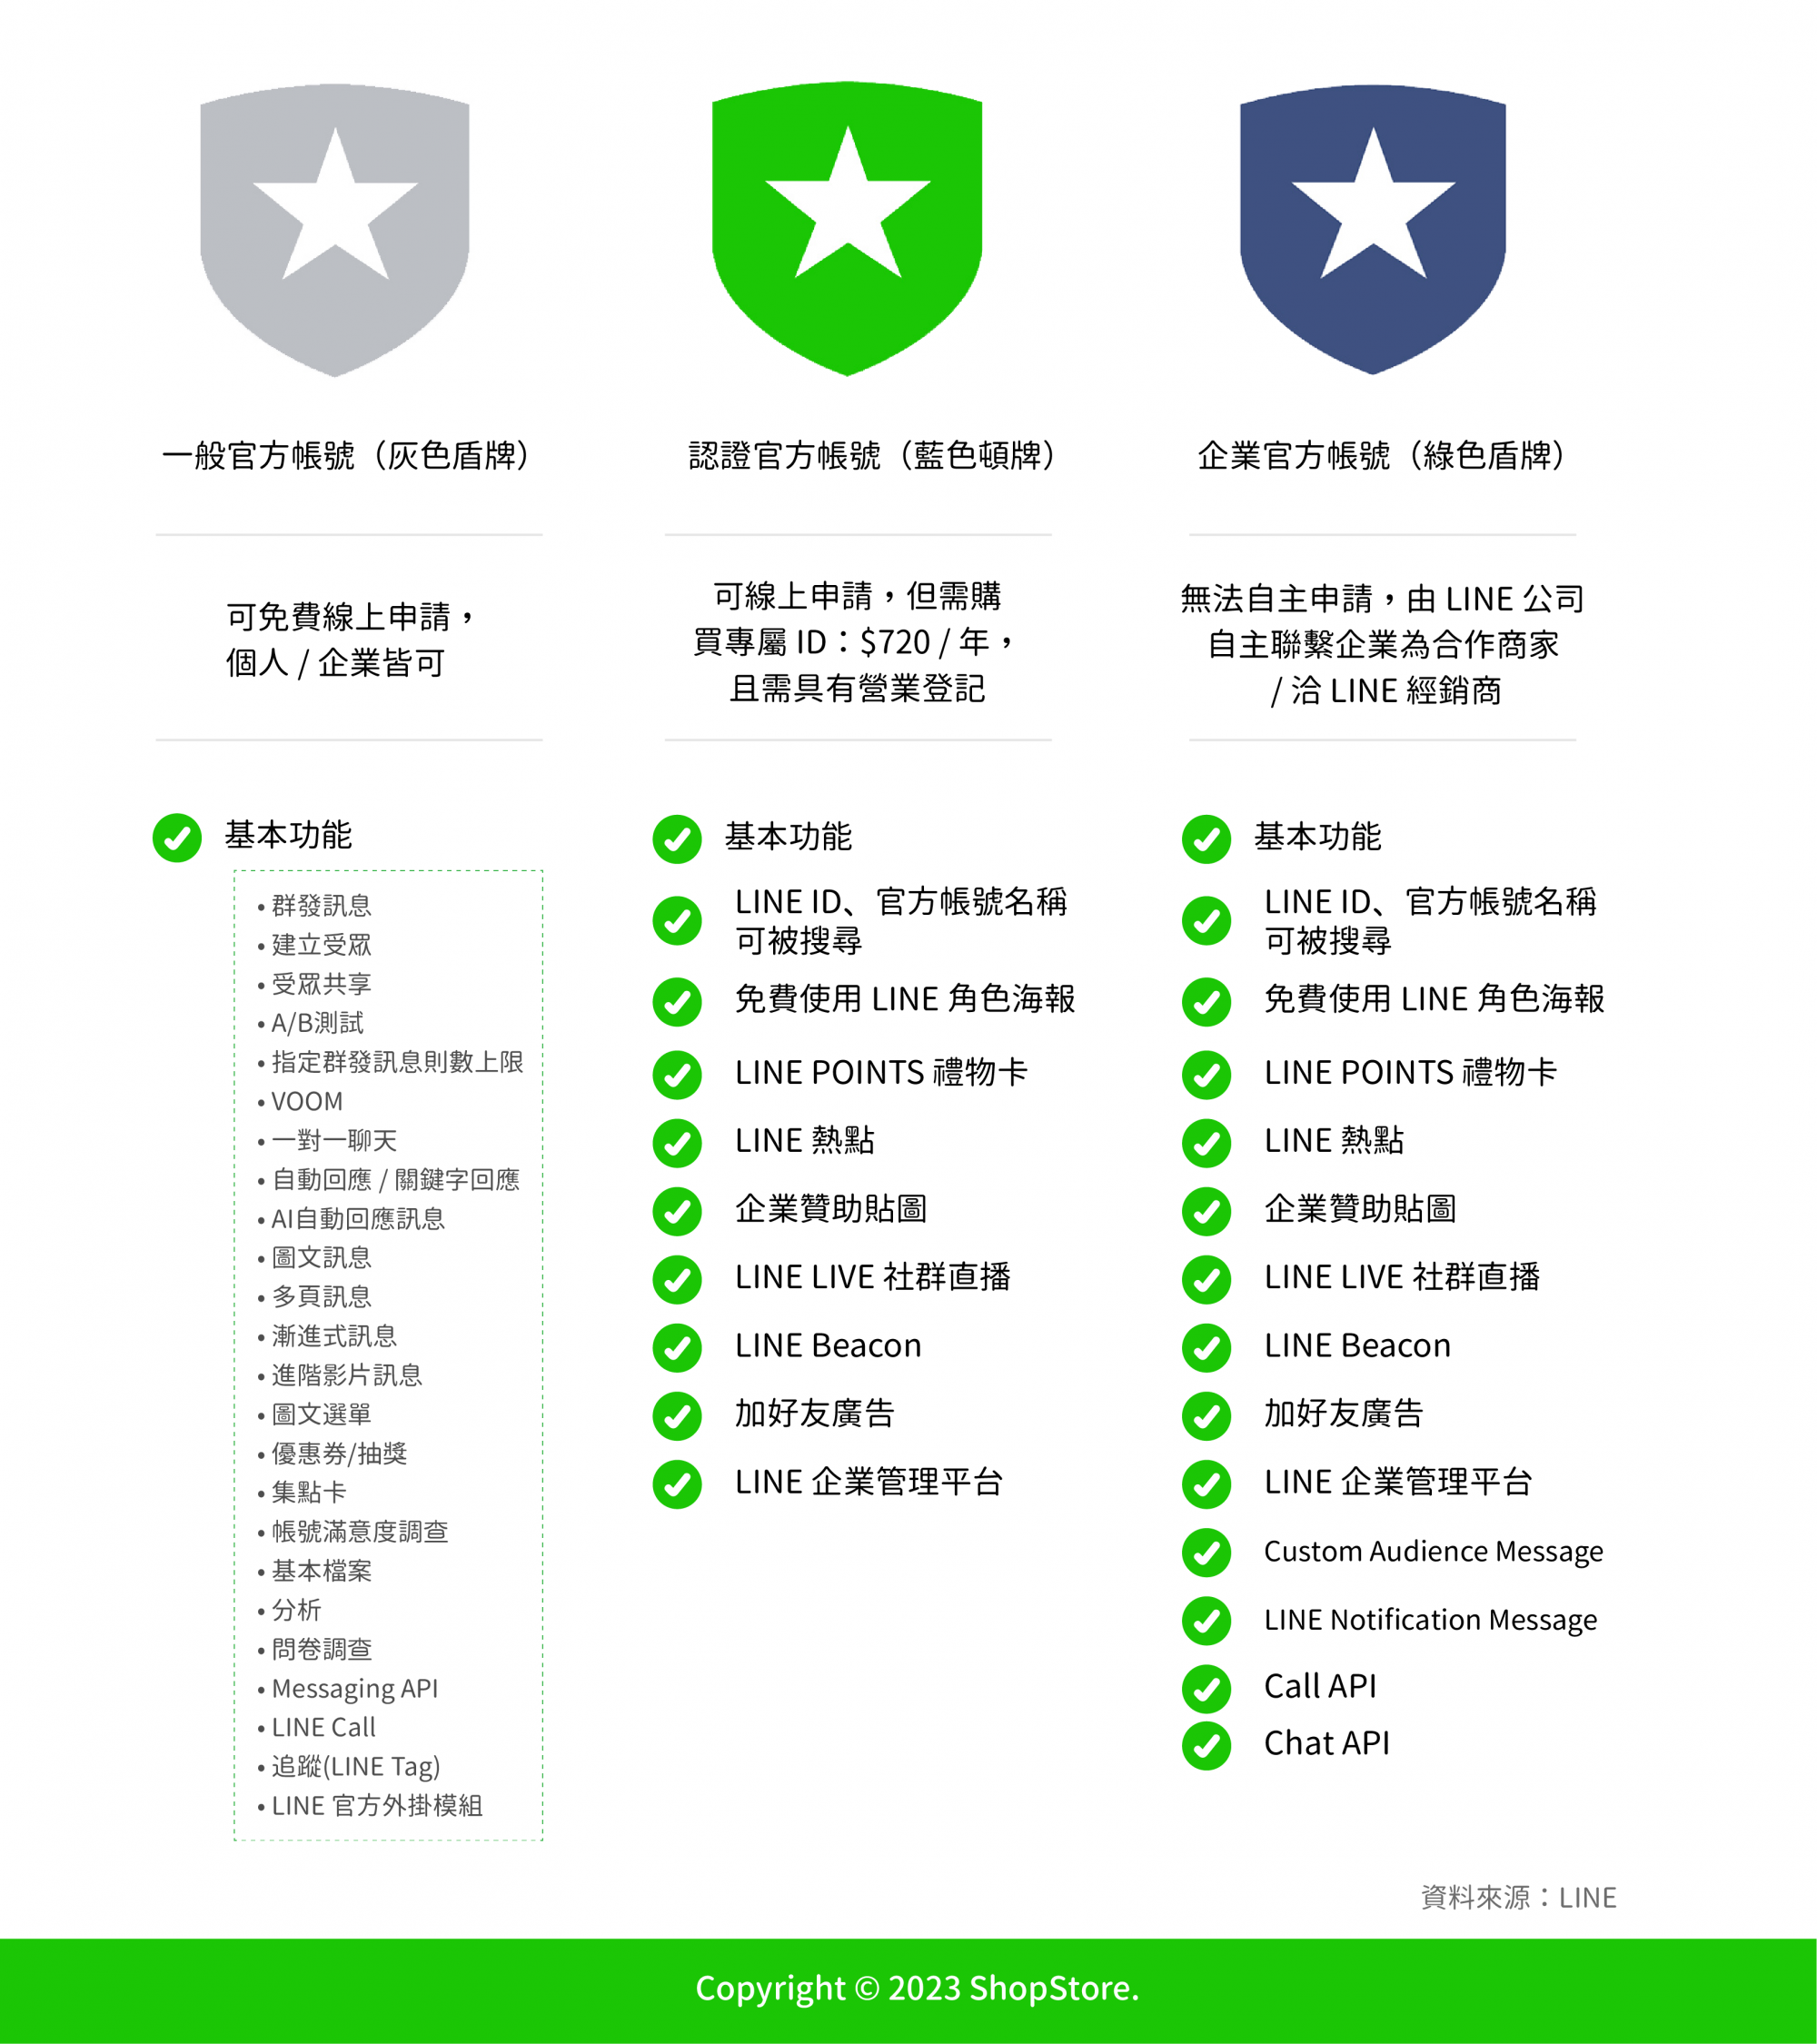 一般官方帳號（灰色盾牌）、認證官方帳號（藍色盾牌）、企業官方帳號（綠色盾牌）類型比較表格